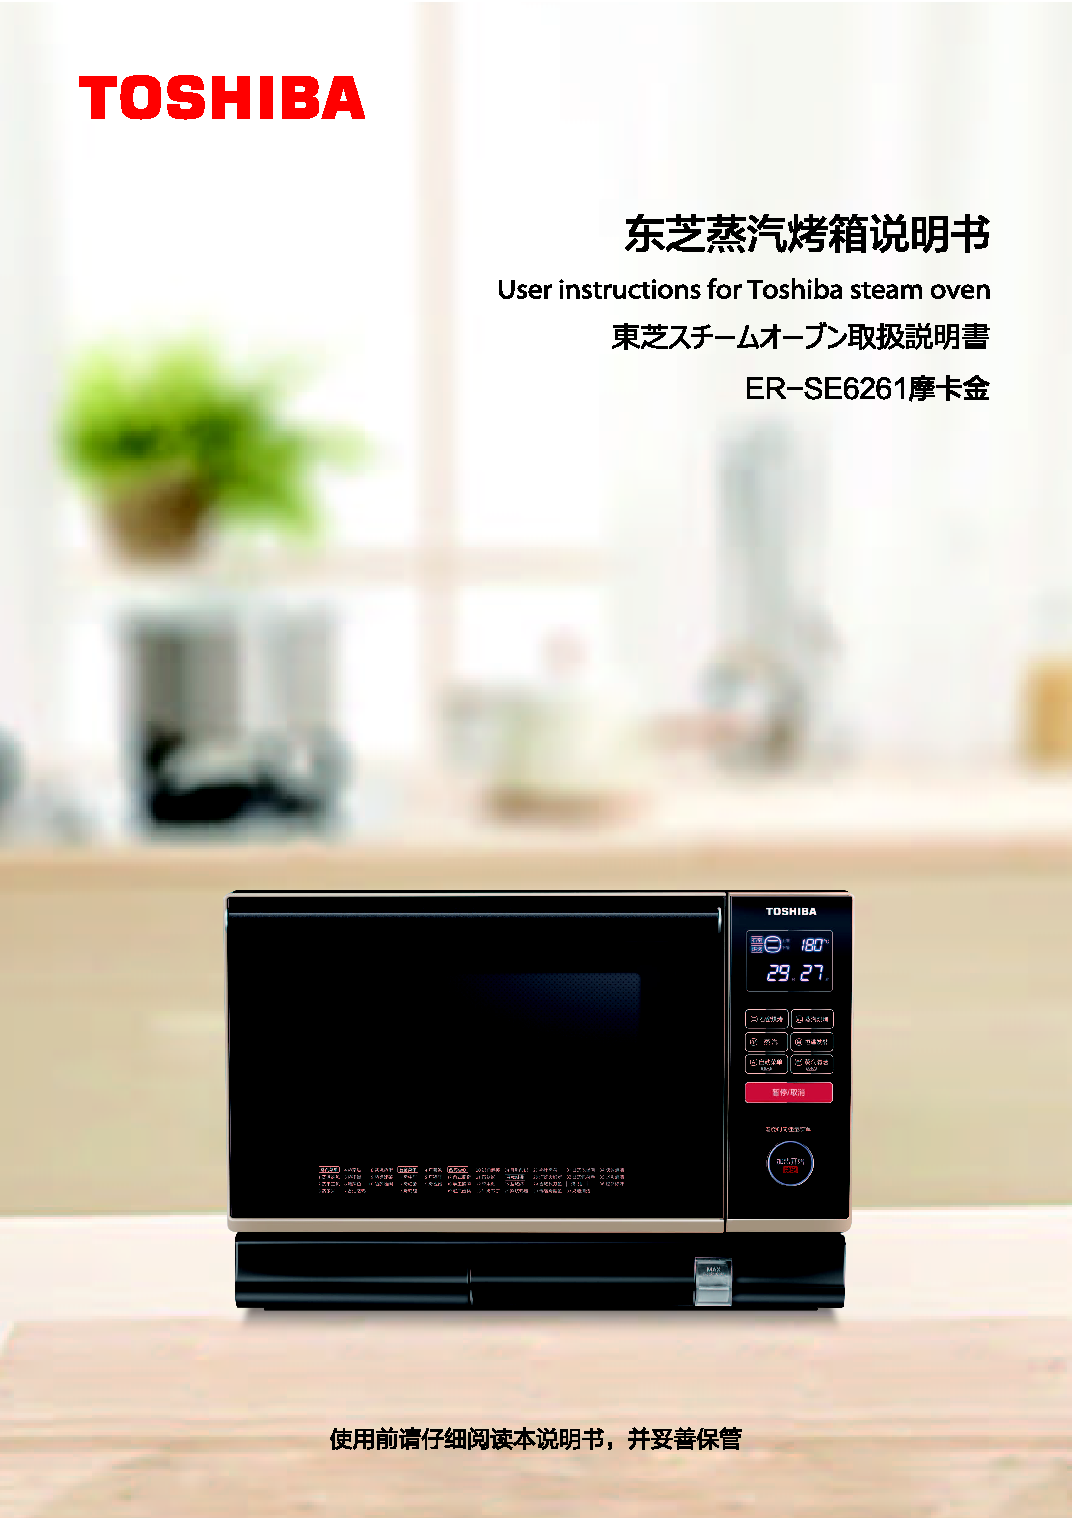 东芝 Toshiba ER-SE6261 使用说明书 封面